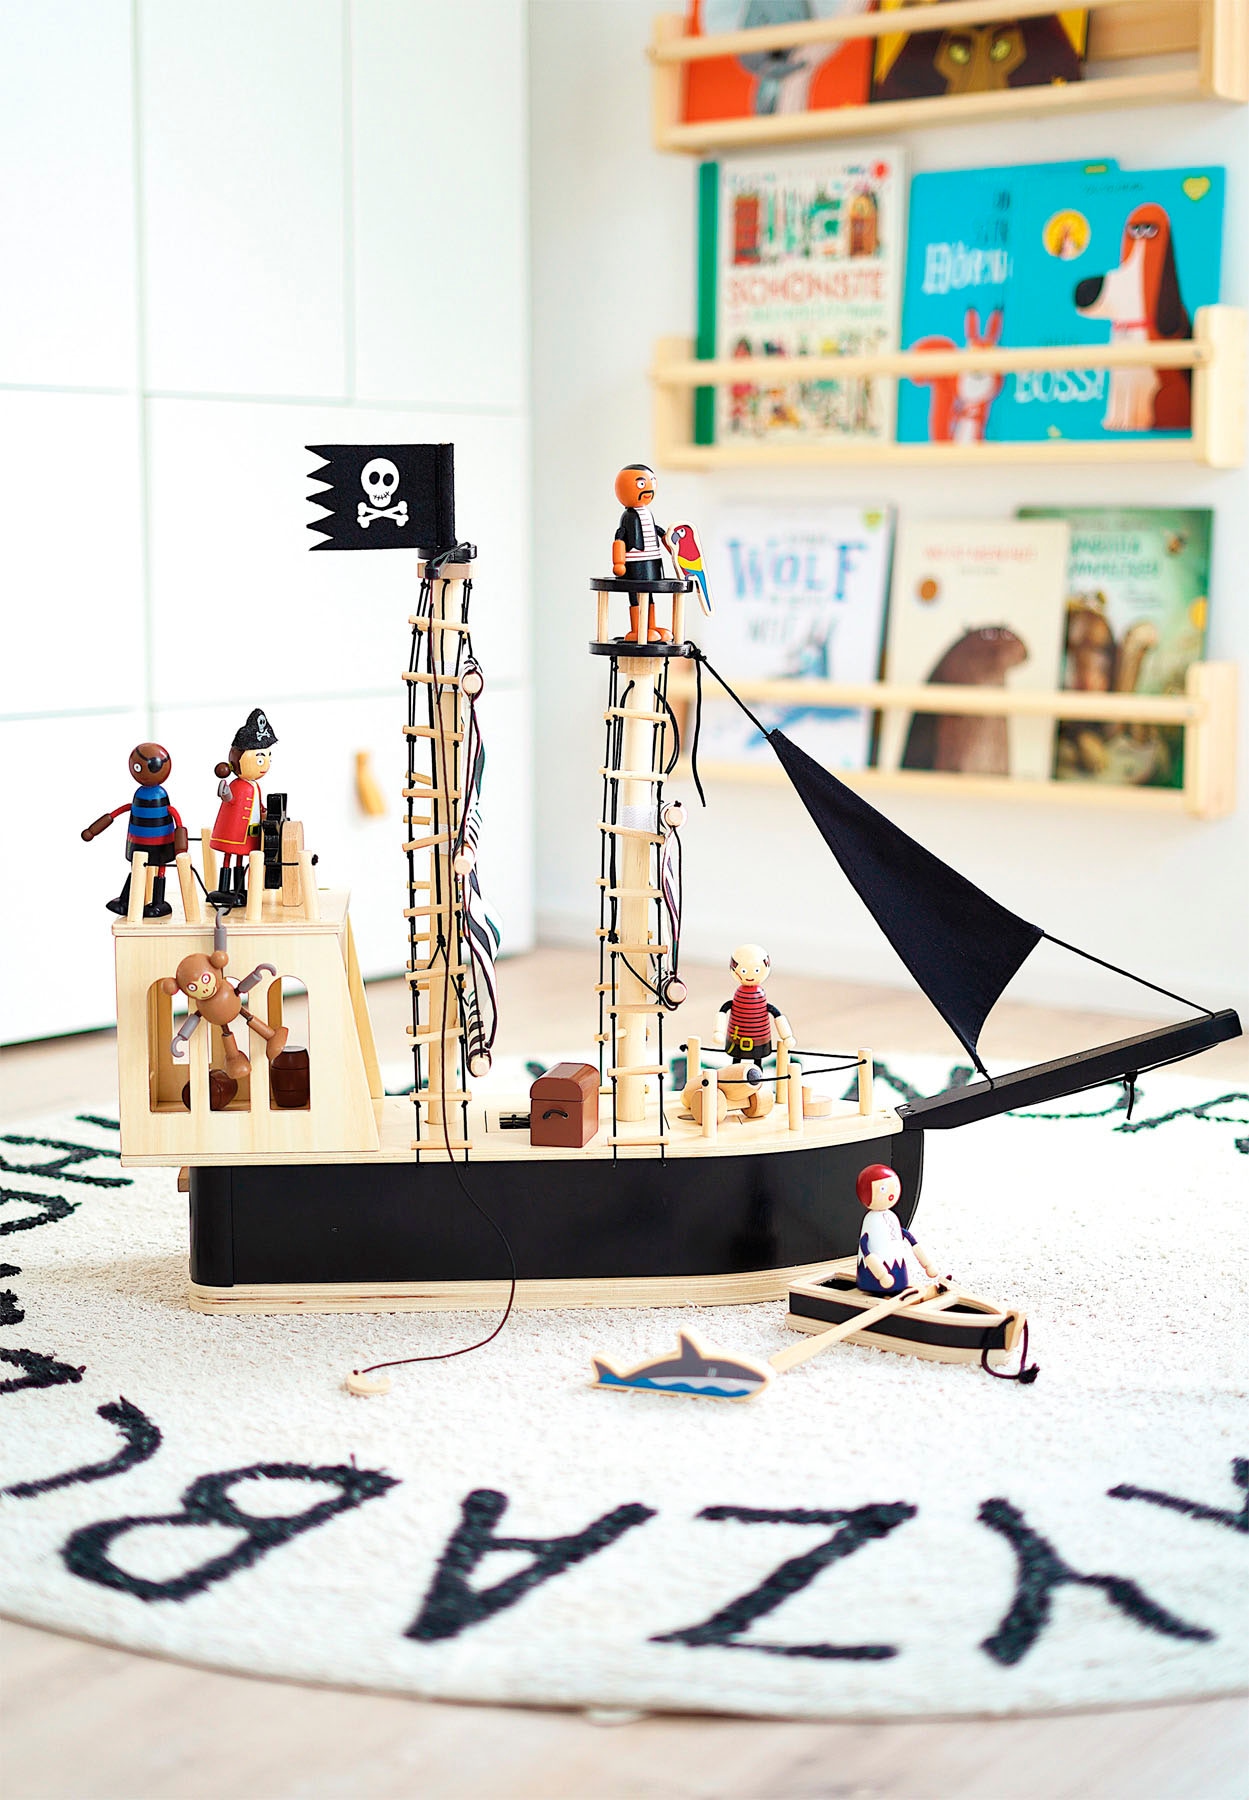 Small Foot Spielzeug-Schiff »Piratenschiff, aus Holz«